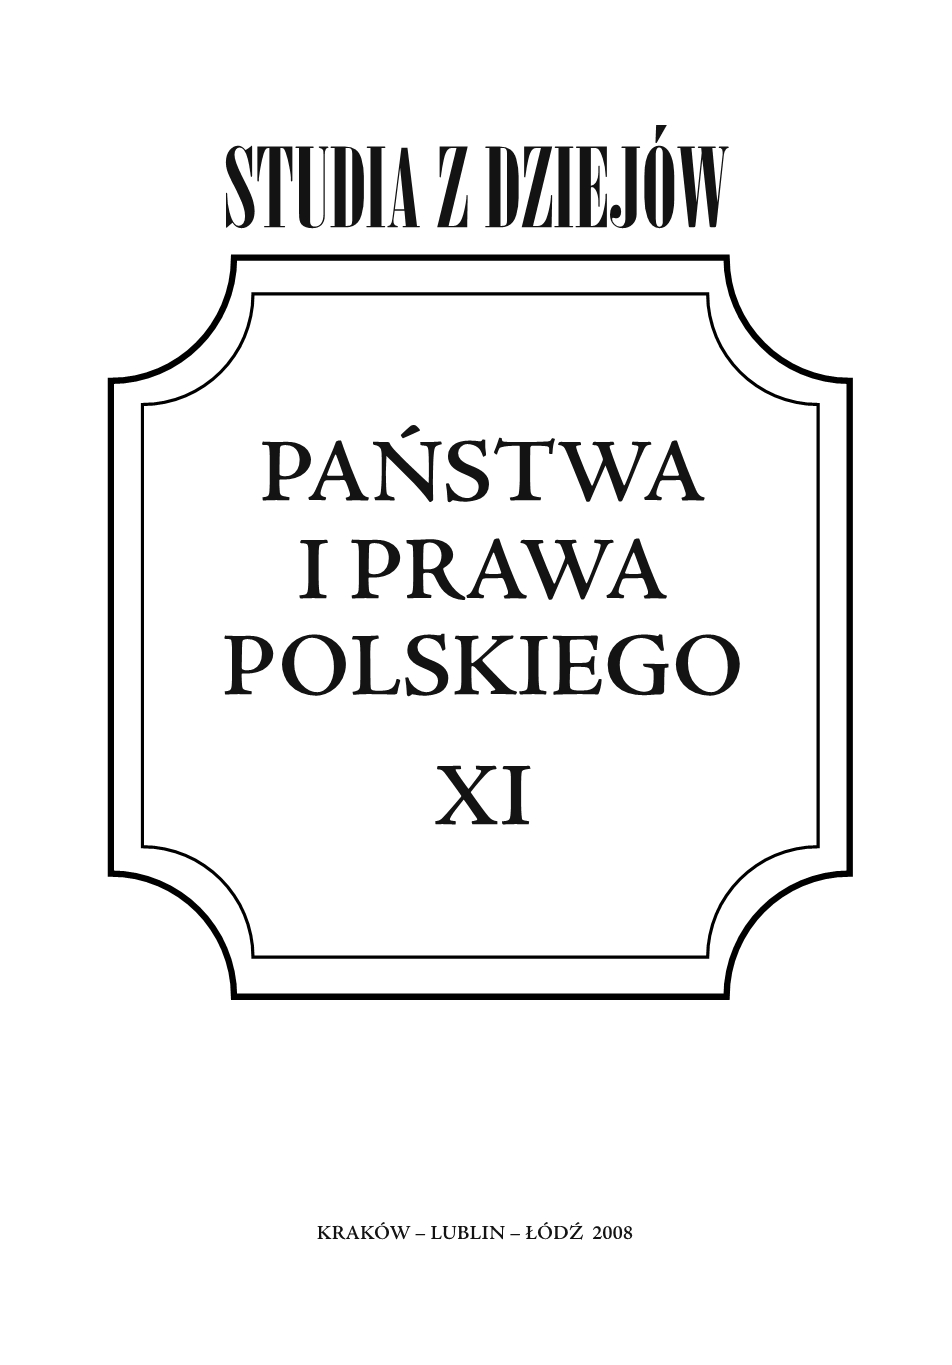 Species privilegium sunt due, unum generale, aliud speciale. Privileges in old Poland Cover Image